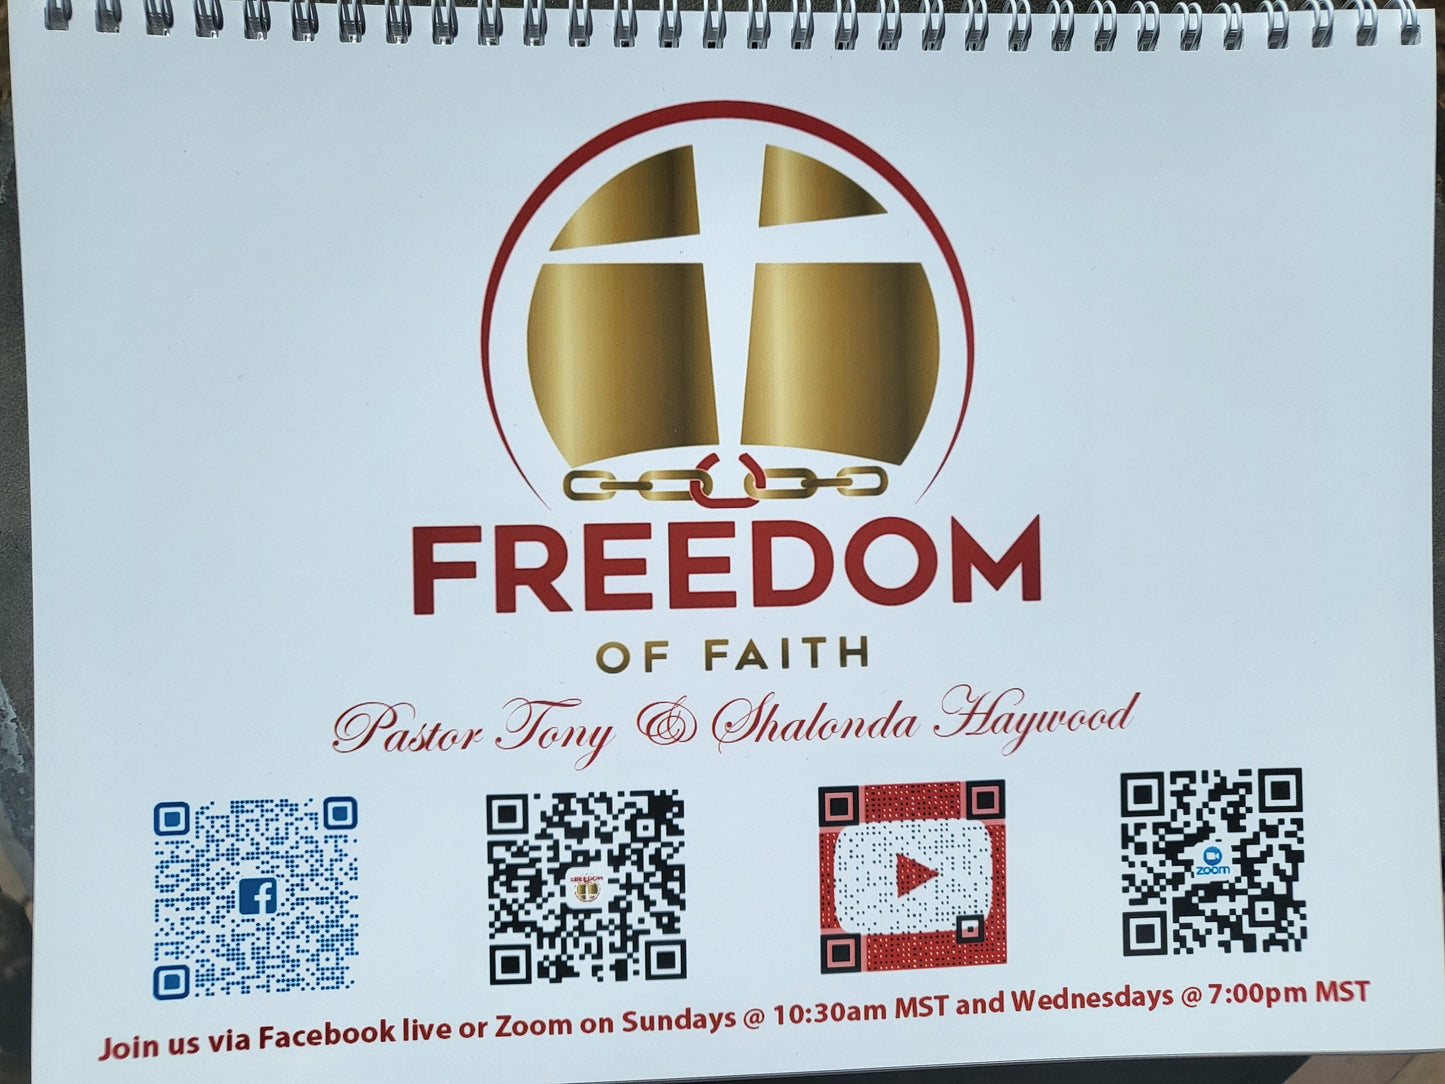 Freedom Of Faith Calendar 2022